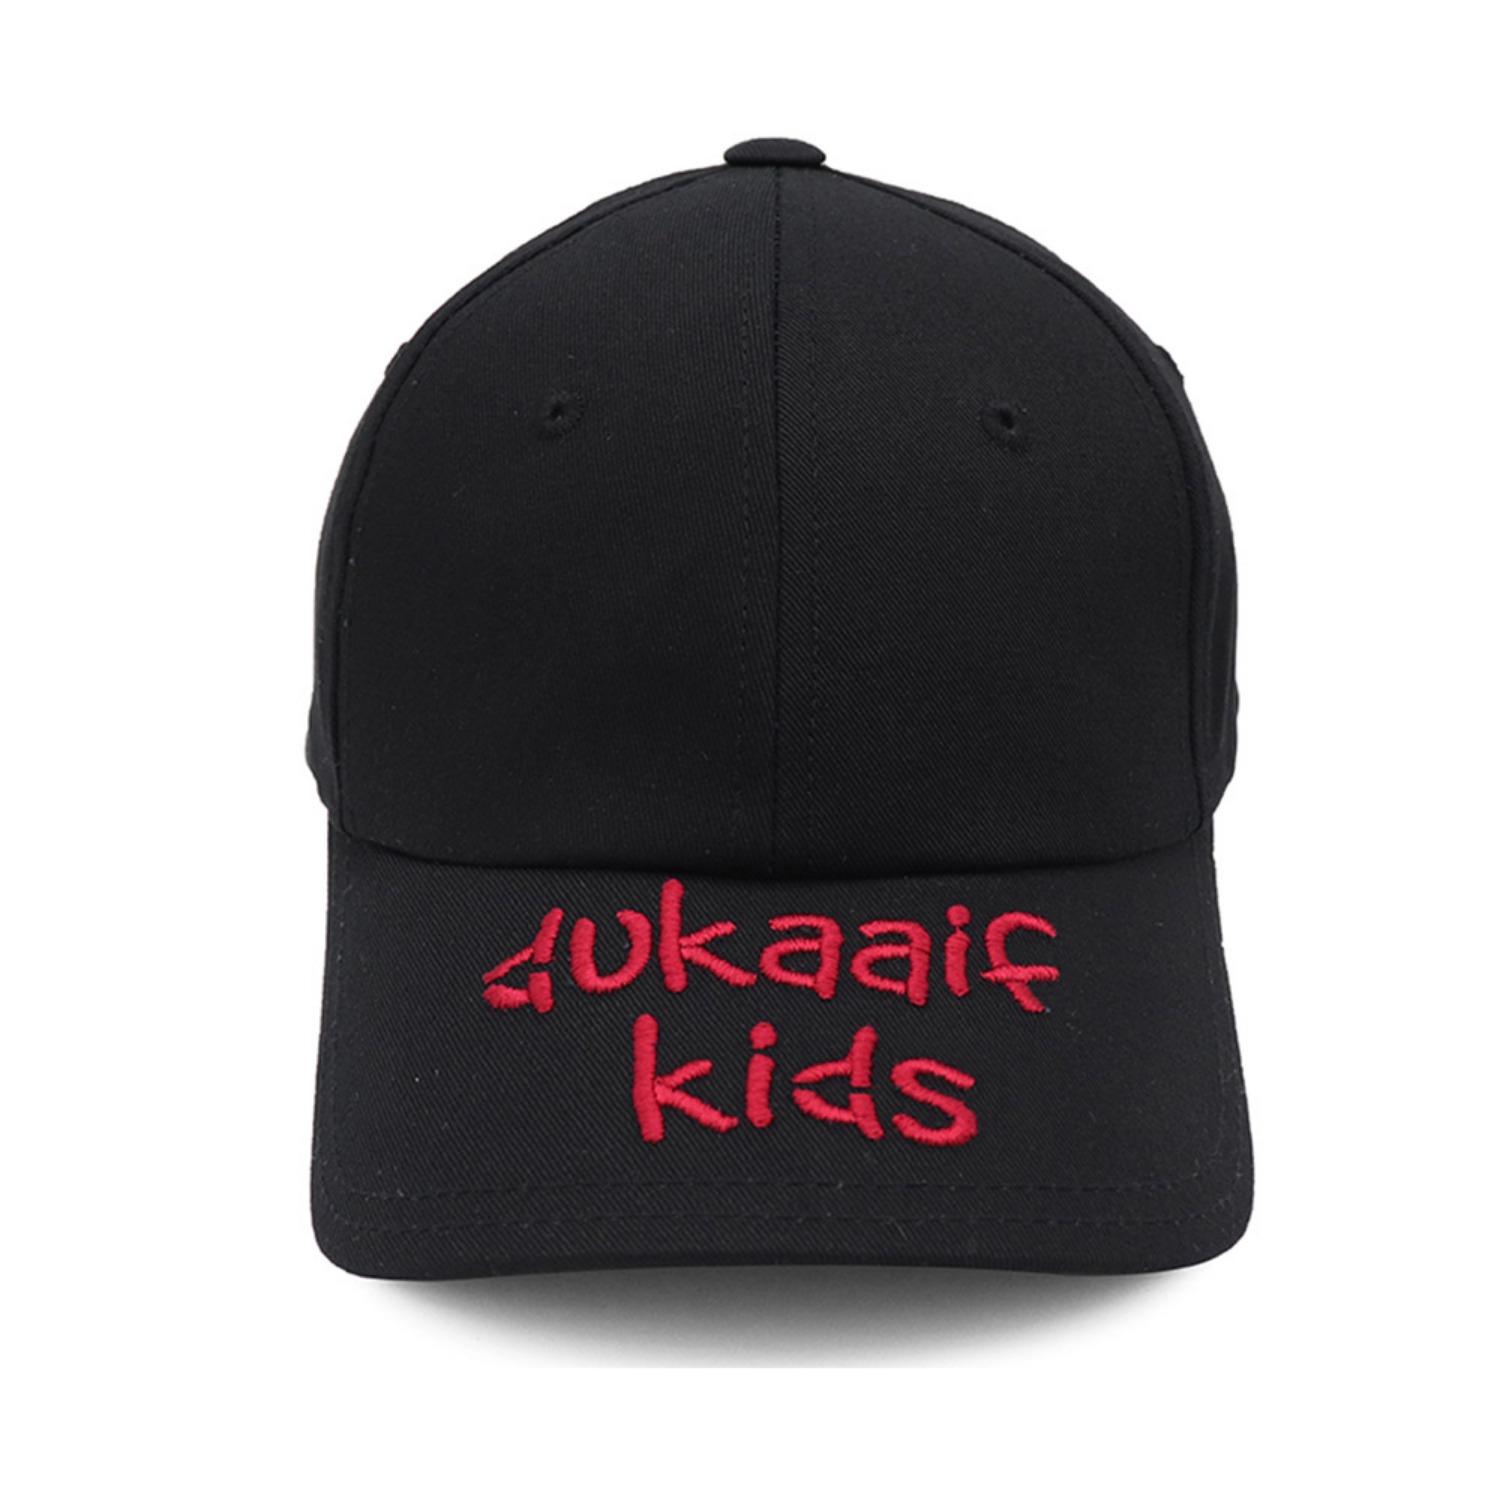 Kids Frankendust Black&amp;red(visor)